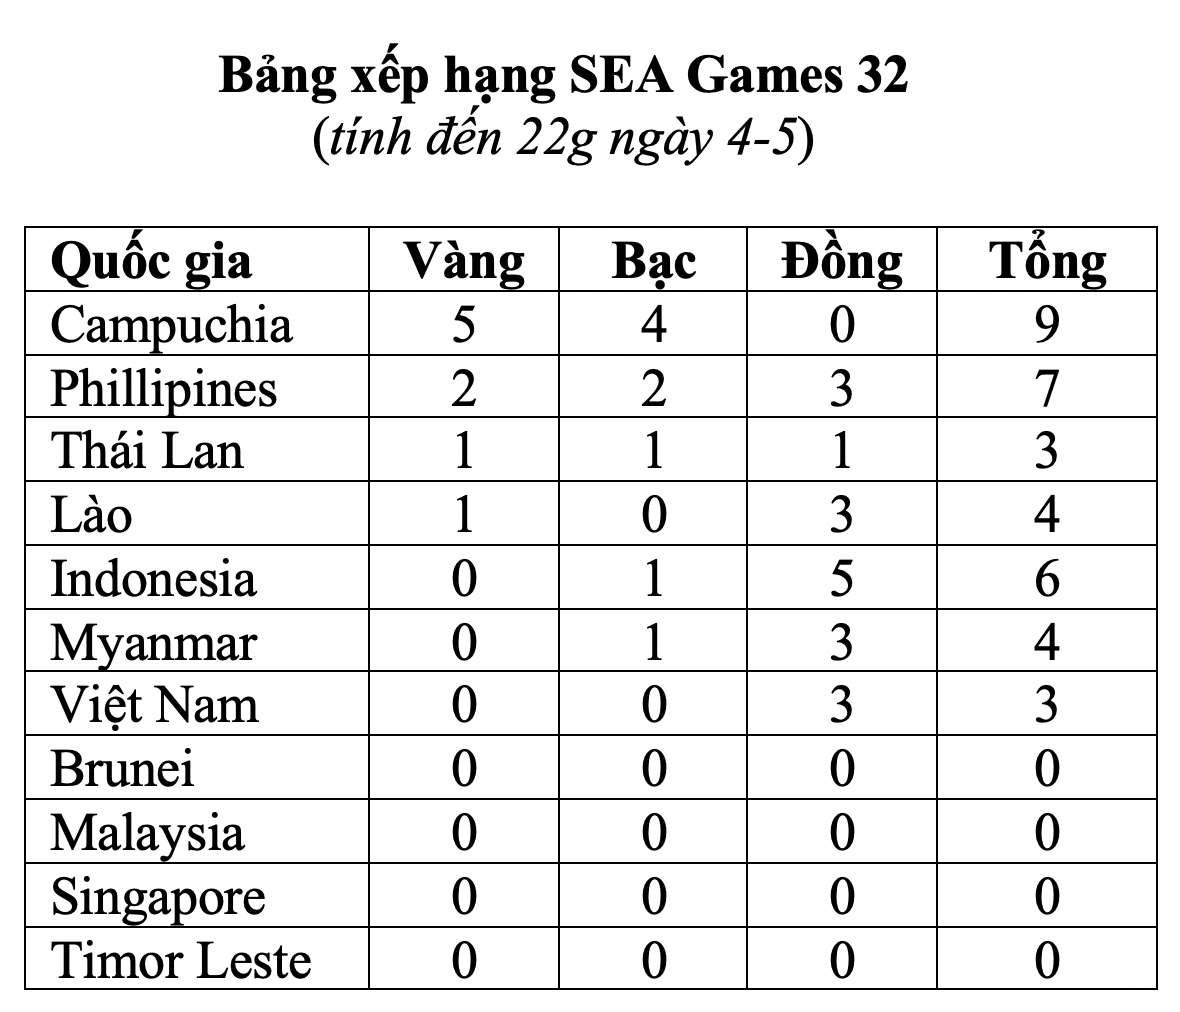 Nhật ký SEA Games 32 ngày 6-5: Nguyễn Thị Thanh Phúc giành vàng đi bộ - Ảnh 50.